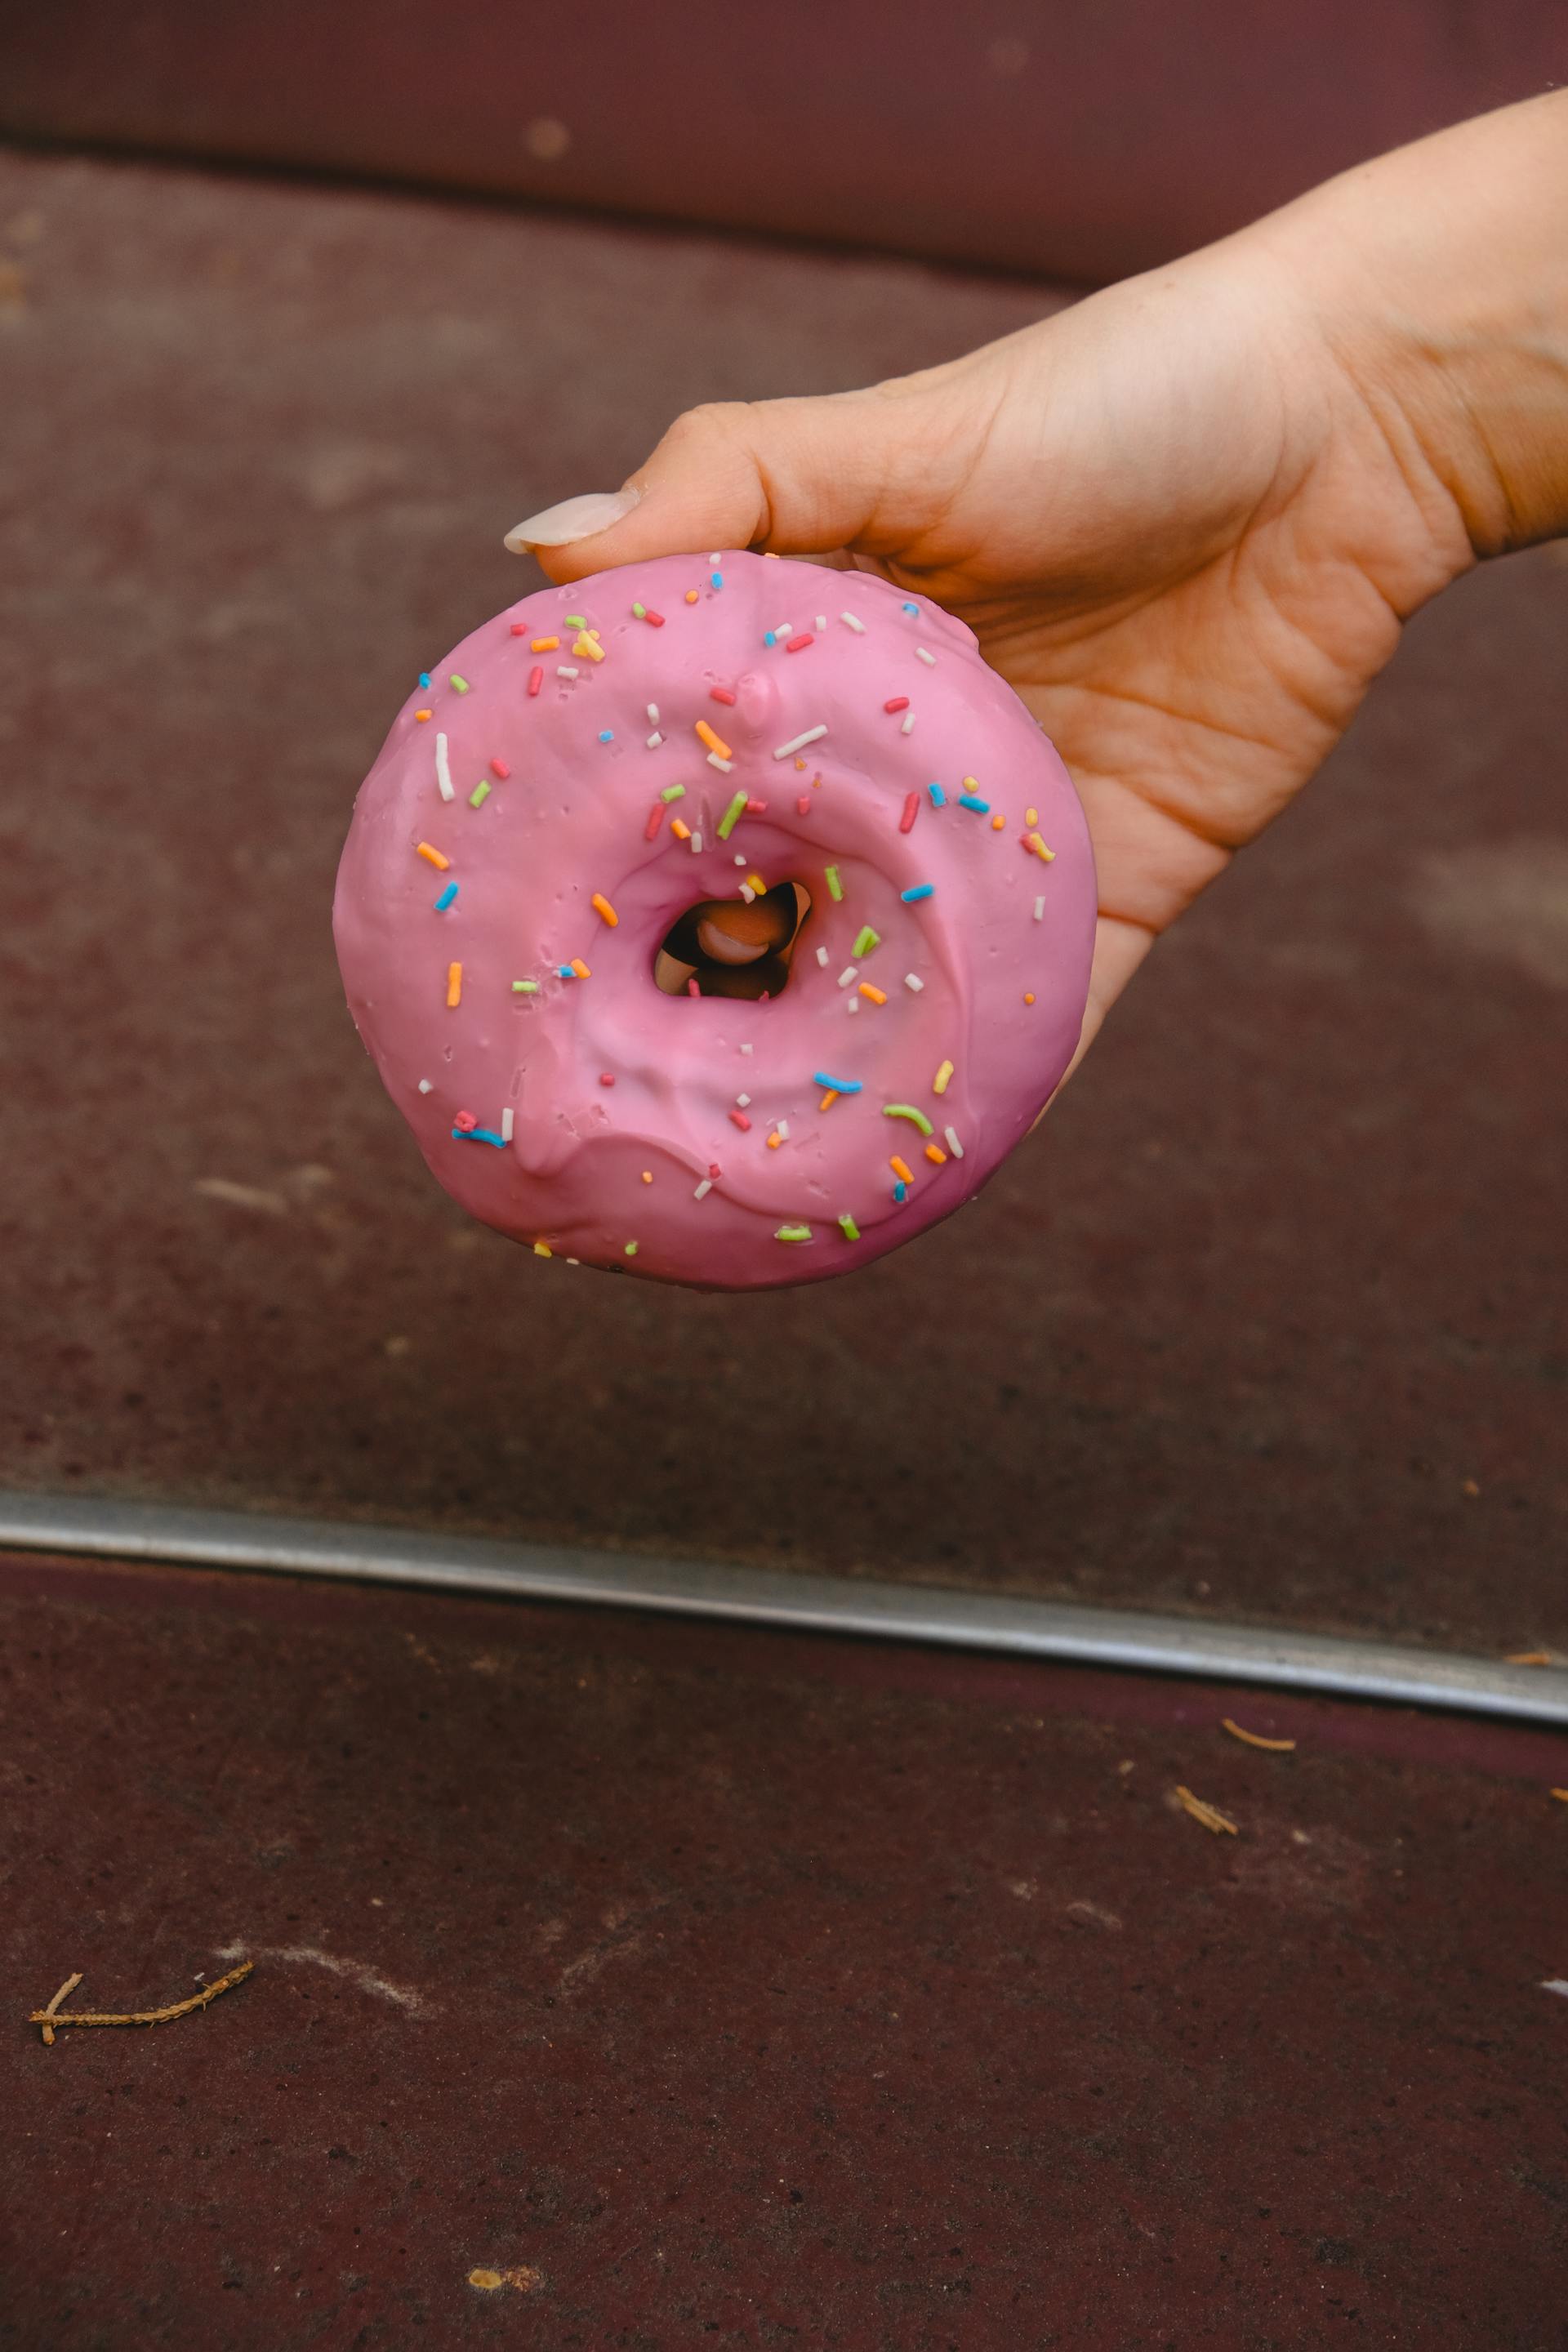 Una persona sujetando un donut | Fuente: Pexels